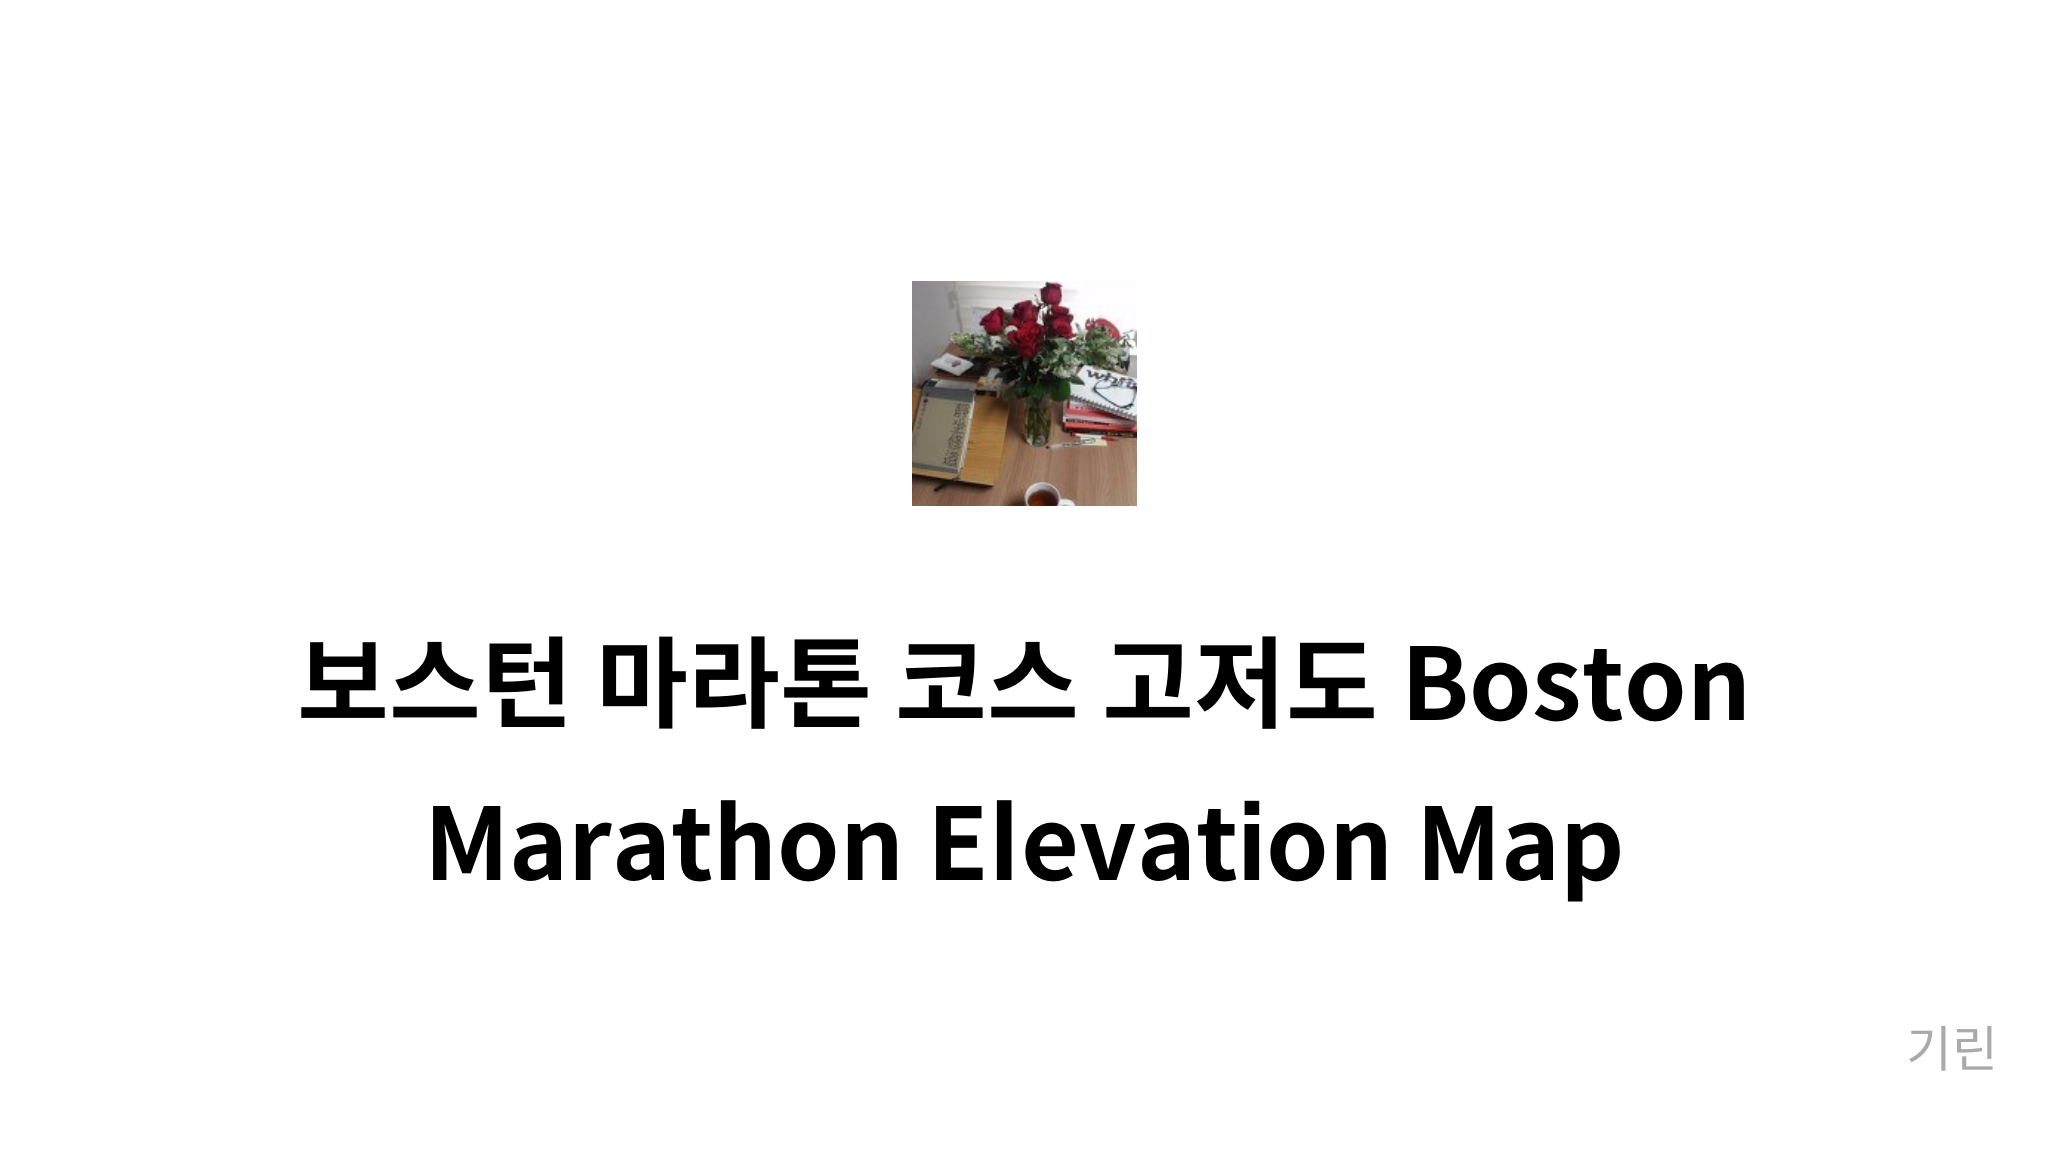 보스턴 마라톤 코스 고저도 Boston Marathon Elevation Map mysetting